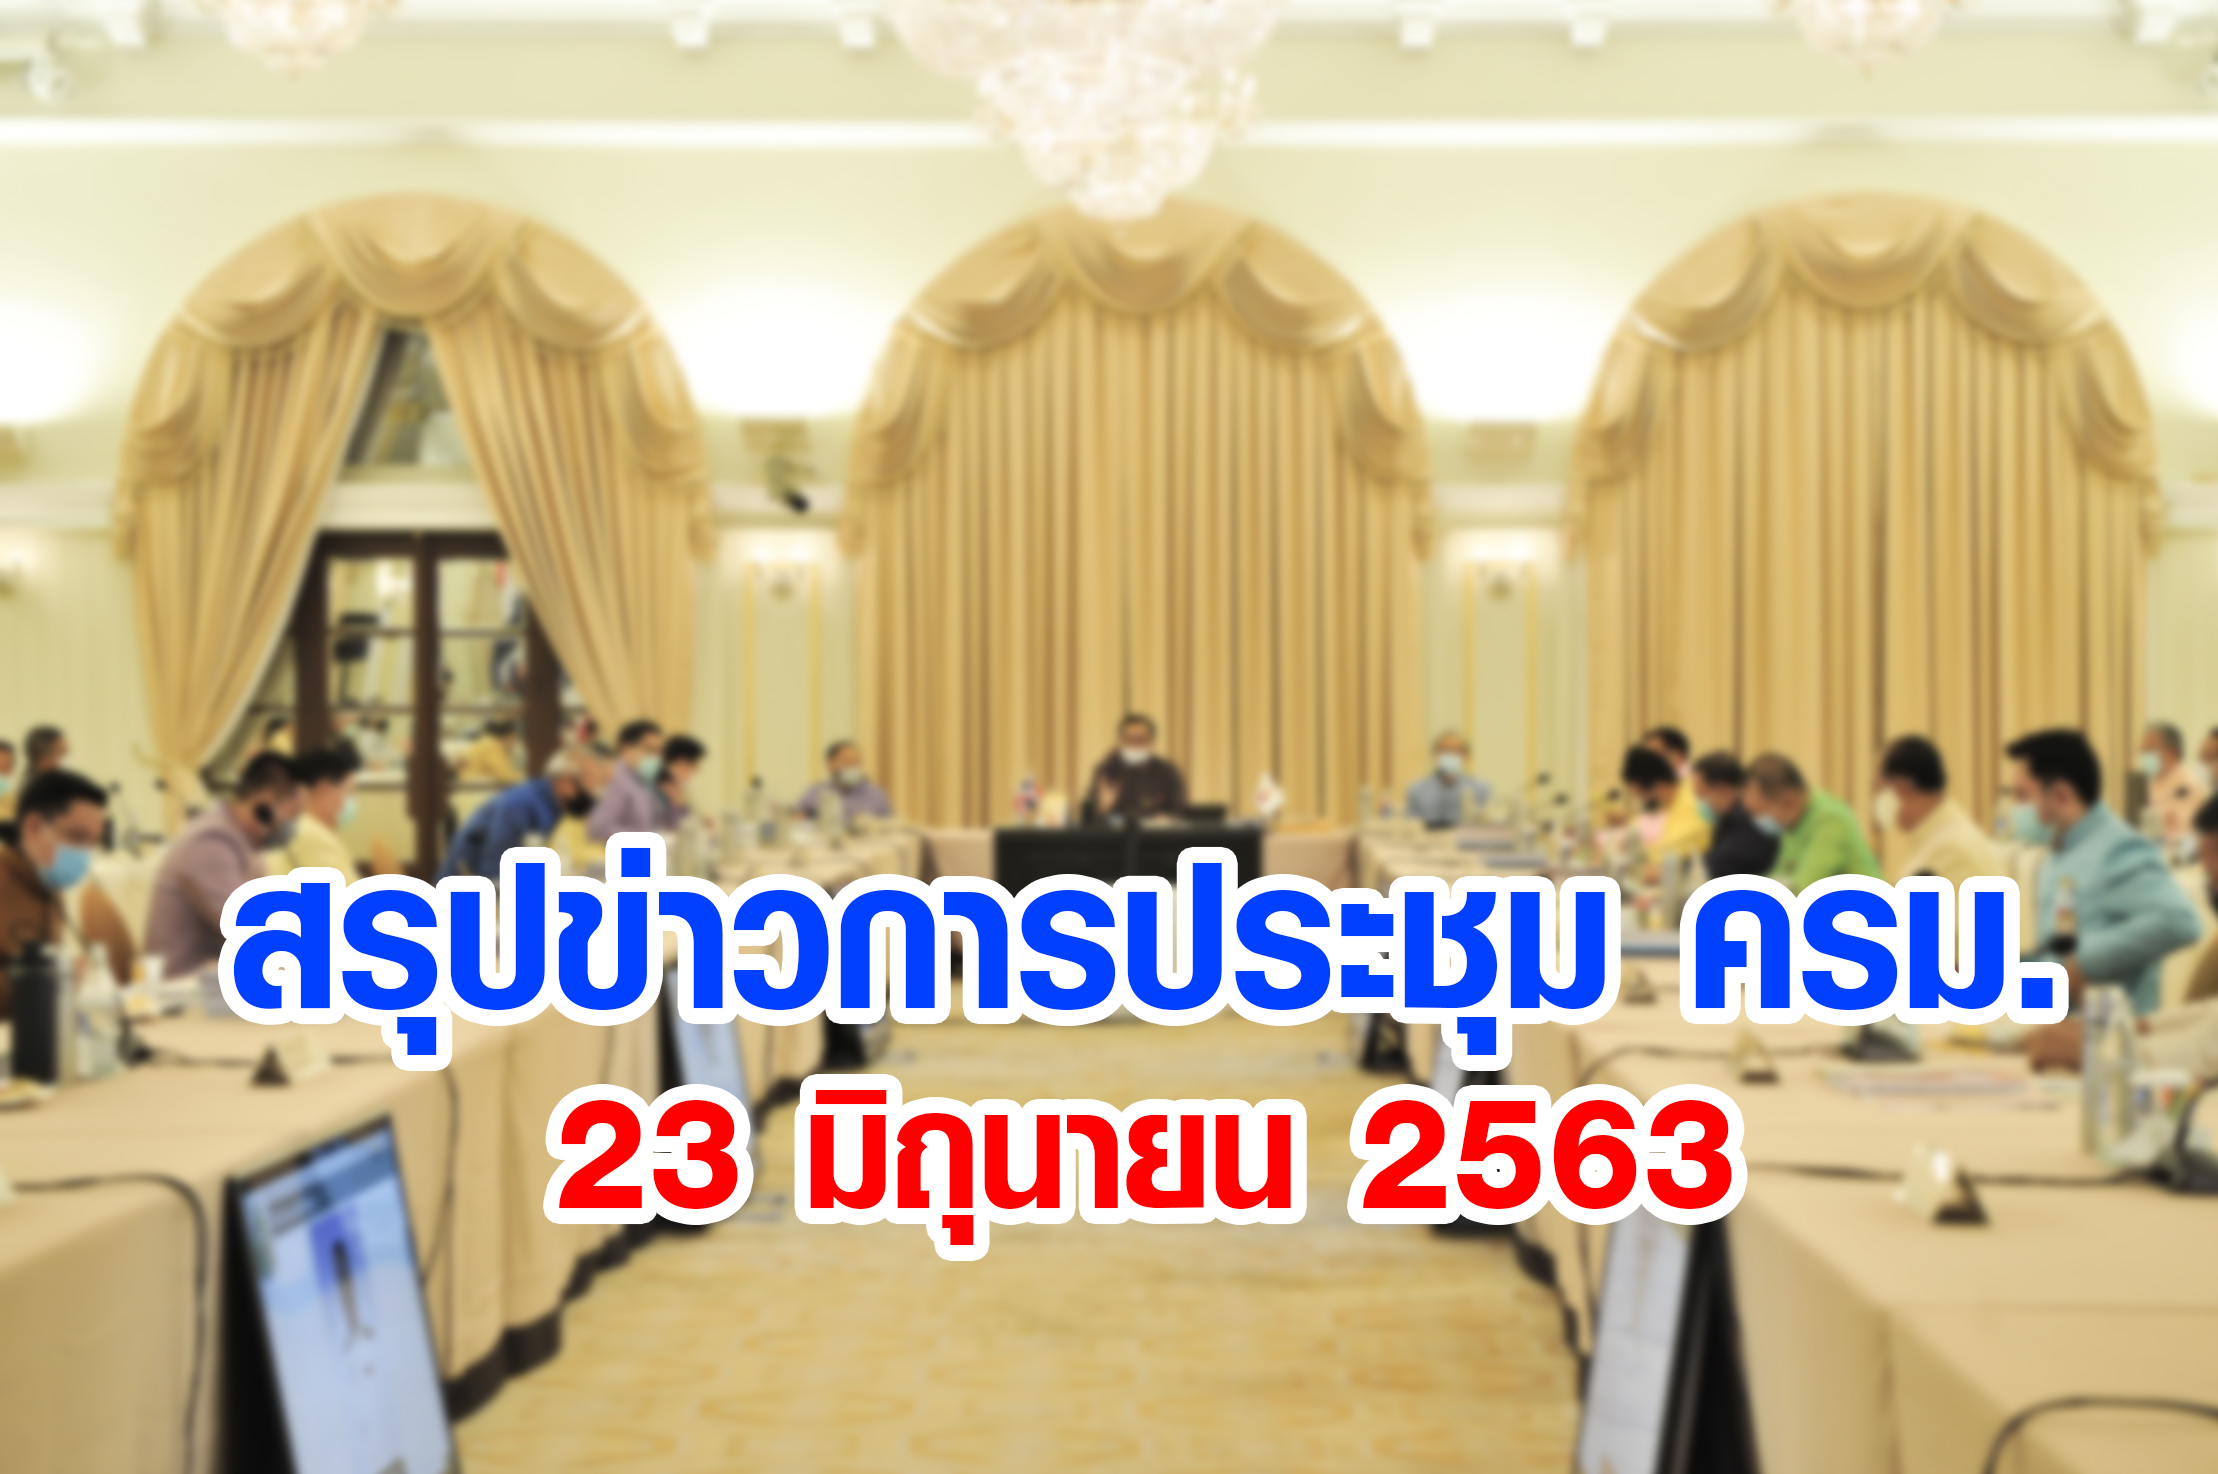 สรุปข่าวการประชุมคณะรัฐมนตรี 23 มิ.ย. 2563